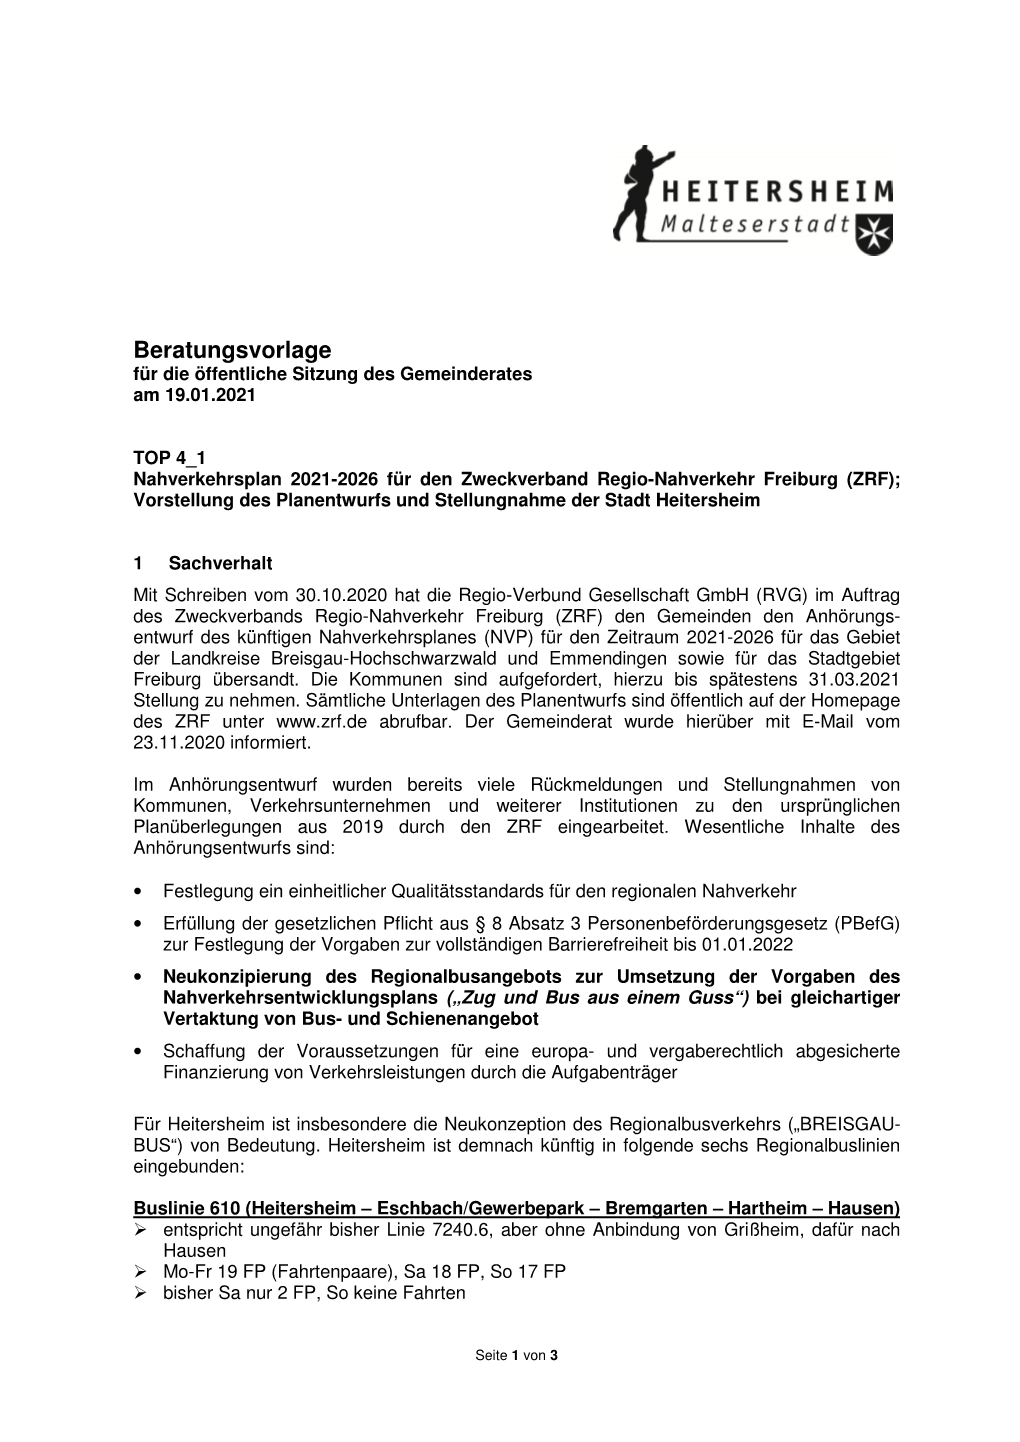 TOP 4 1 Nahverkehrsplan 2021-2026 Für Den Zweckverband Regio-Nahverkehr Freiburg (ZRF); Vorstellung Des Planentwurfs Und Stellungnahme Der Stadt Heitersheim